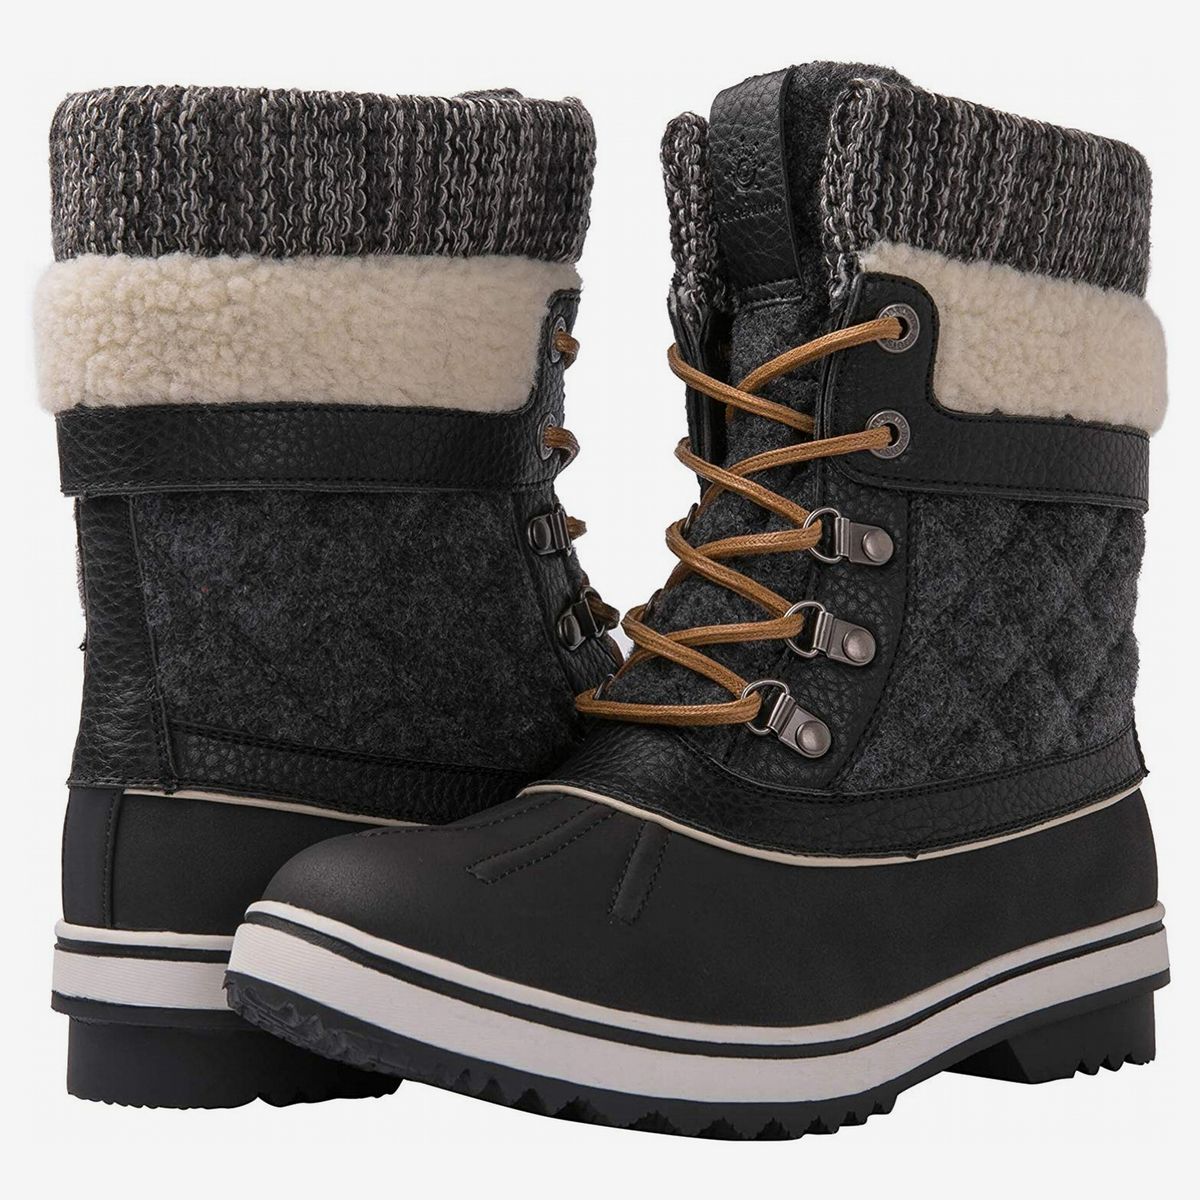 good cute winter boots